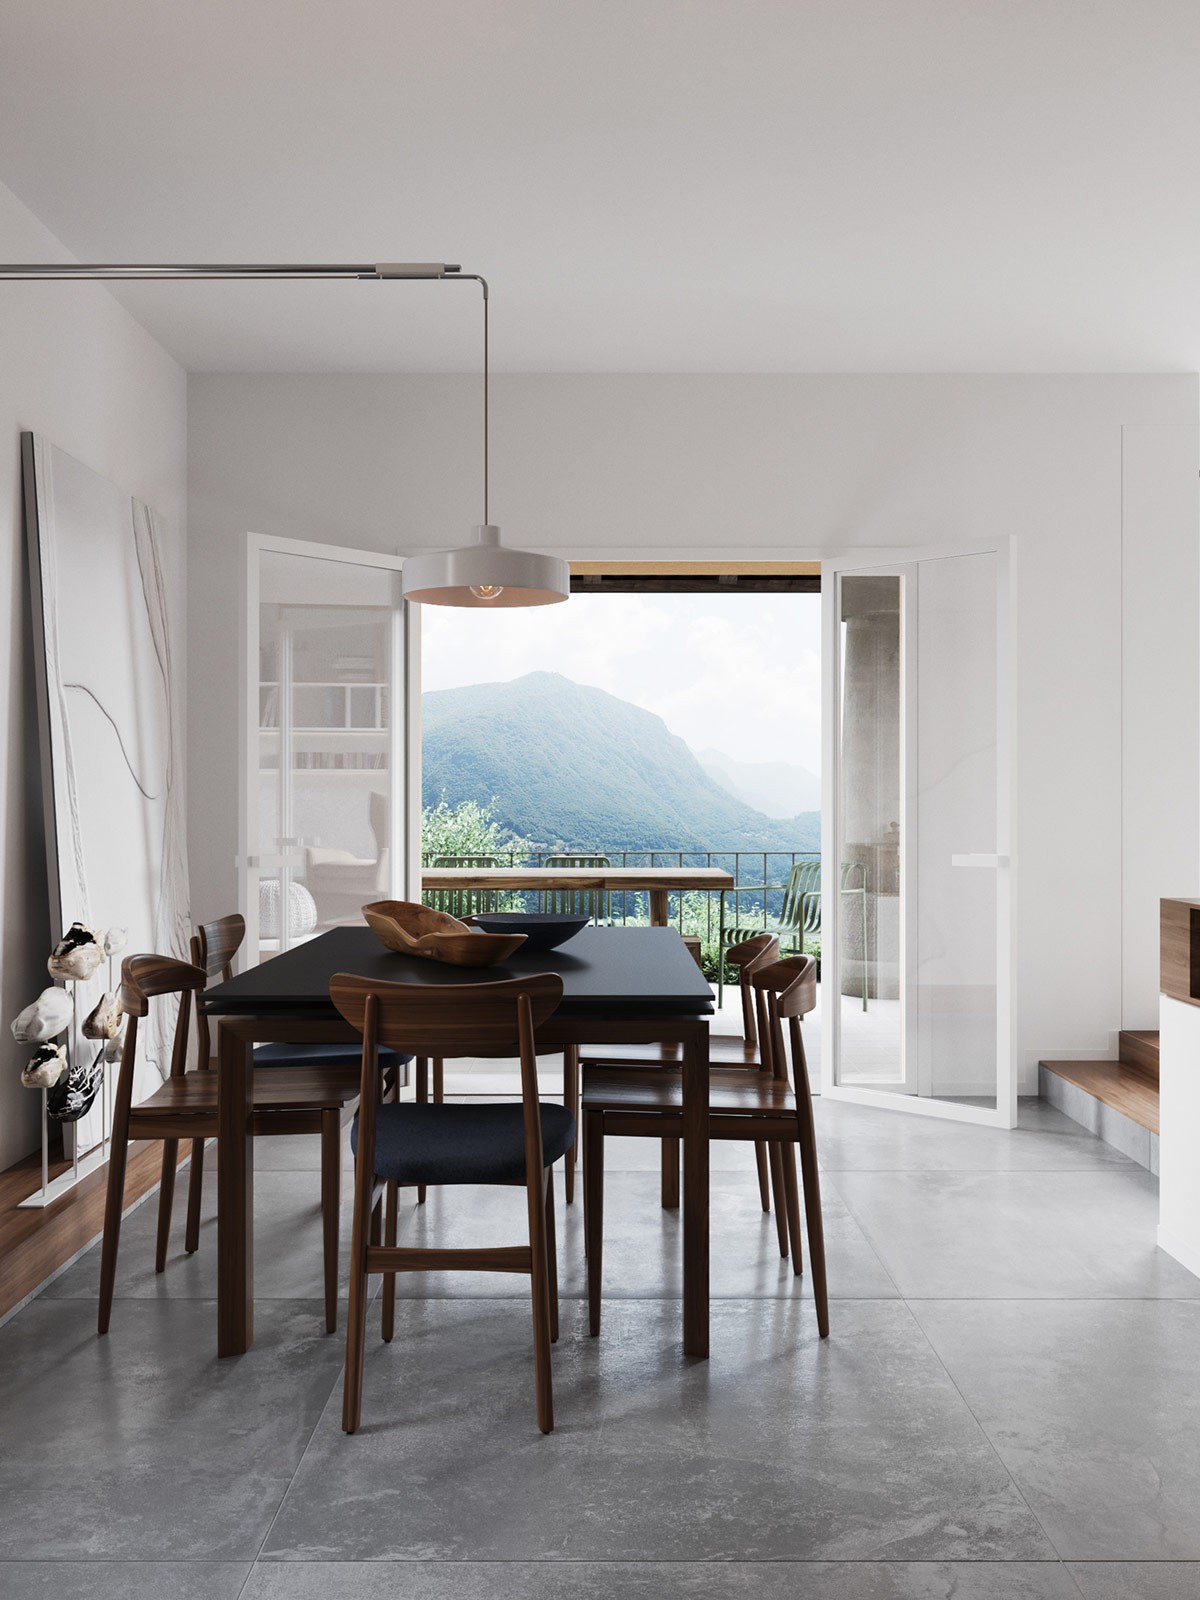 Hình ảnh phòng ăn thoáng sáng với bộ bàn ăn bằng gỗ, hướng nhìn ra cảnh quan núi rừng thông qua cửa sổ kính